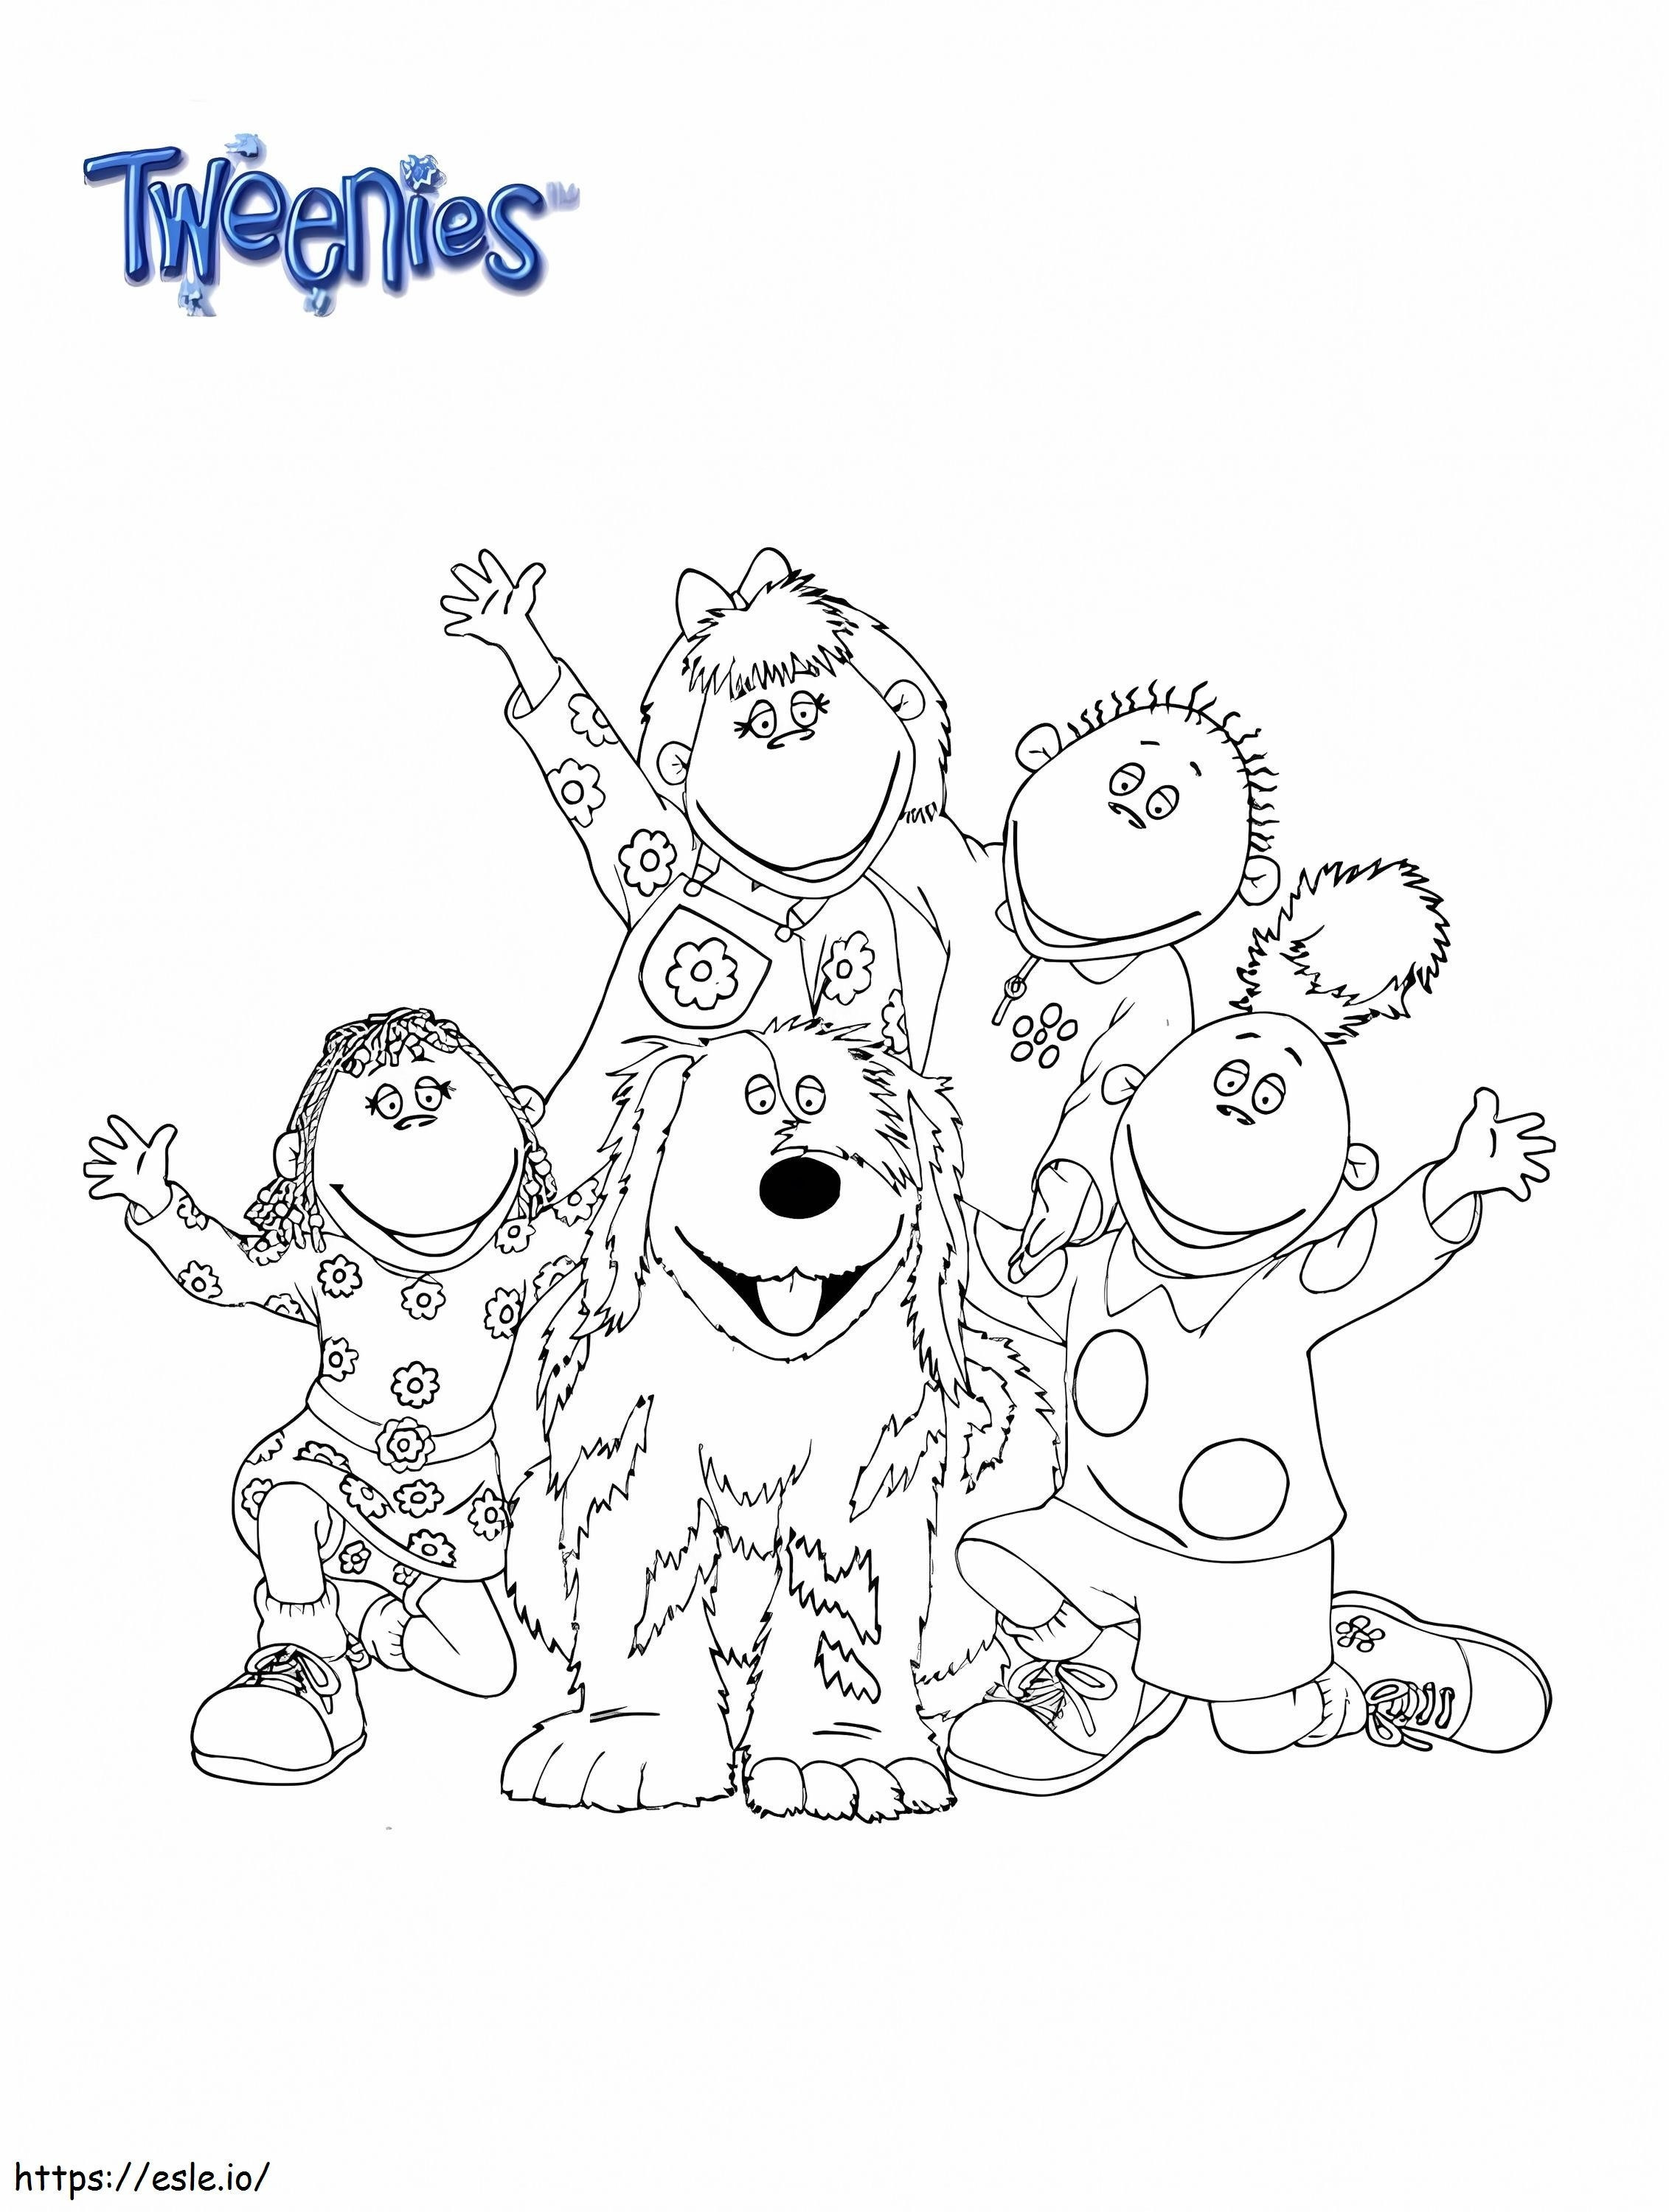 Tweenies Characters coloring page